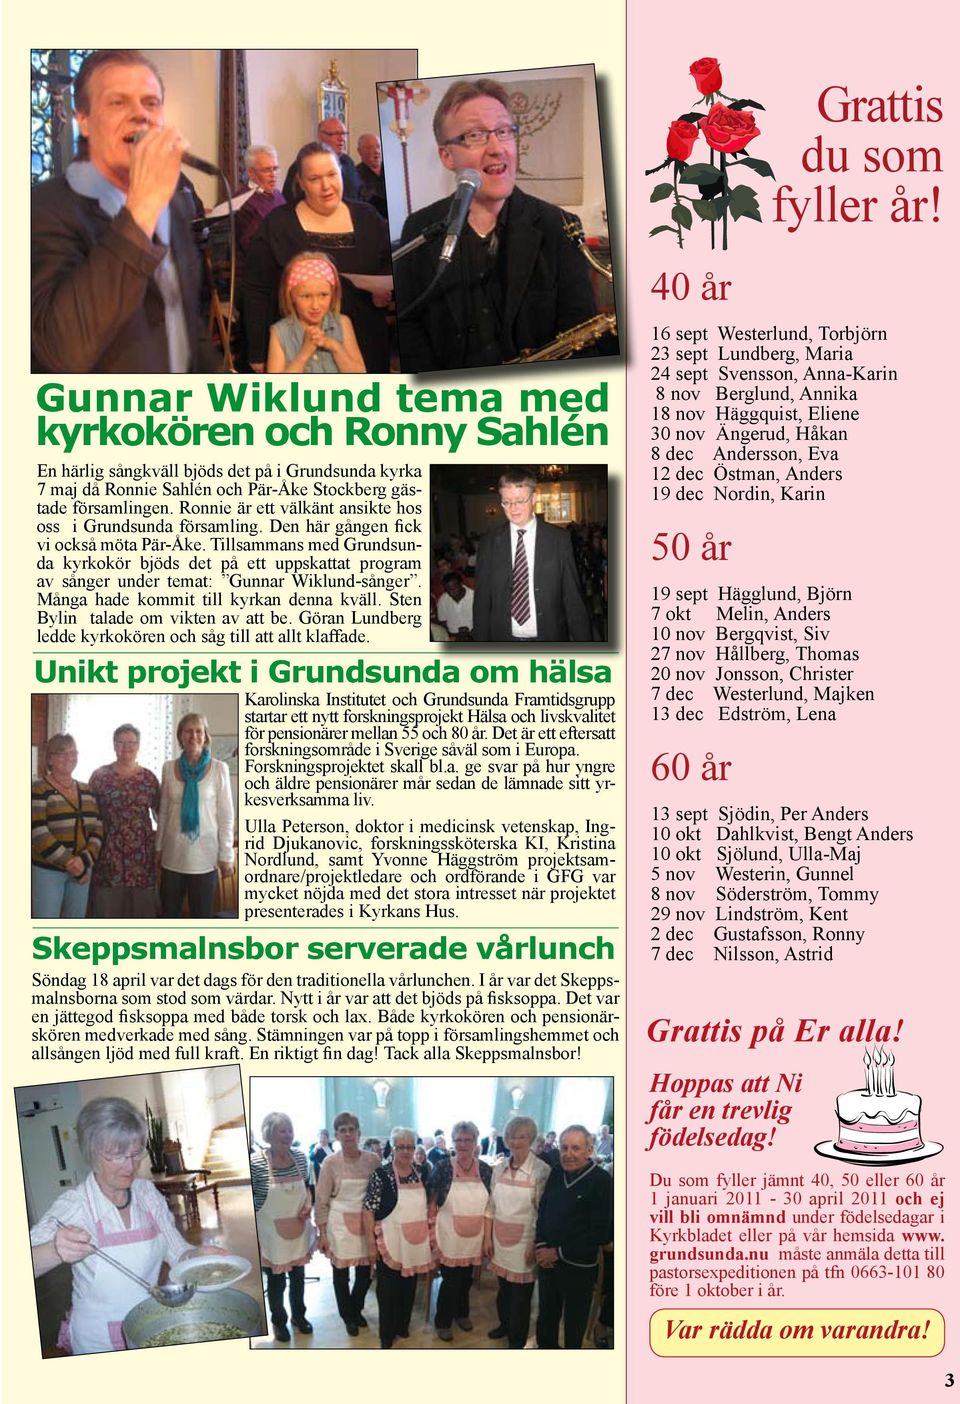 Tillsammans med Grundsunda kyrkokör bjöds det på ett uppskattat program av sånger under temat: Gunnar Wiklund-sånger. Många hade kommit till kyrkan denna kväll. Sten Bylin talade om vikten av att be.